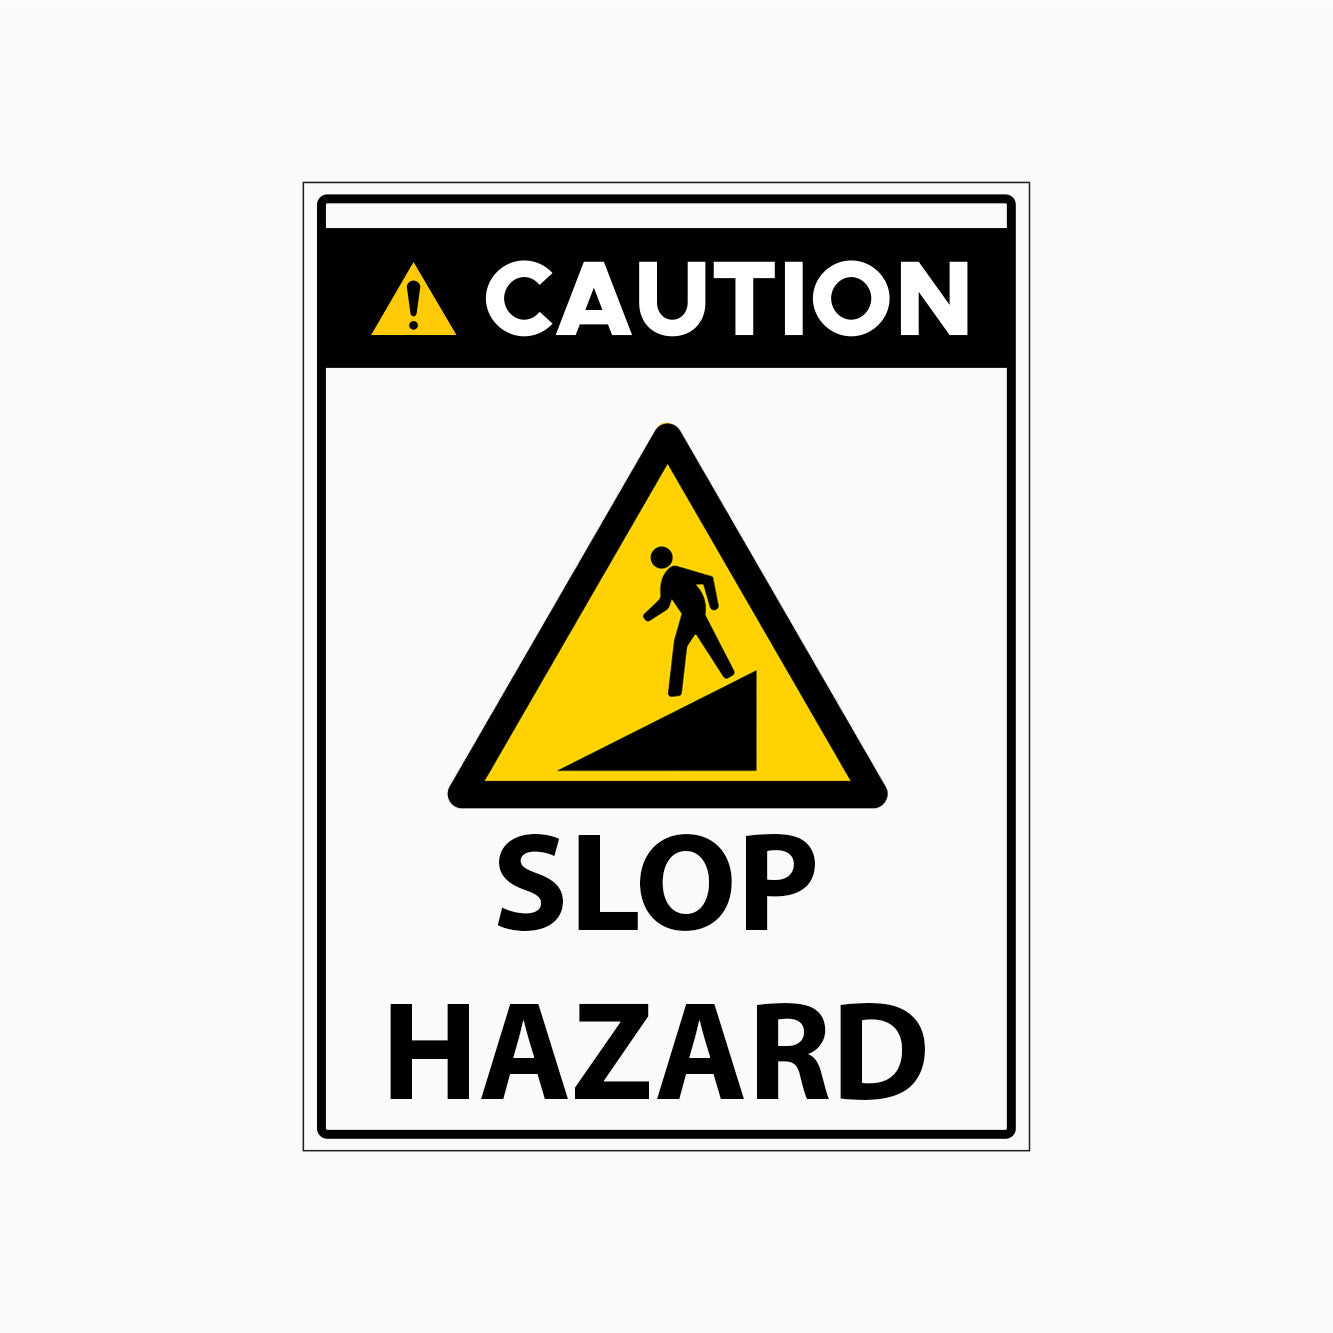 CAUTION SIGN - SLOP HAZARD SIGN